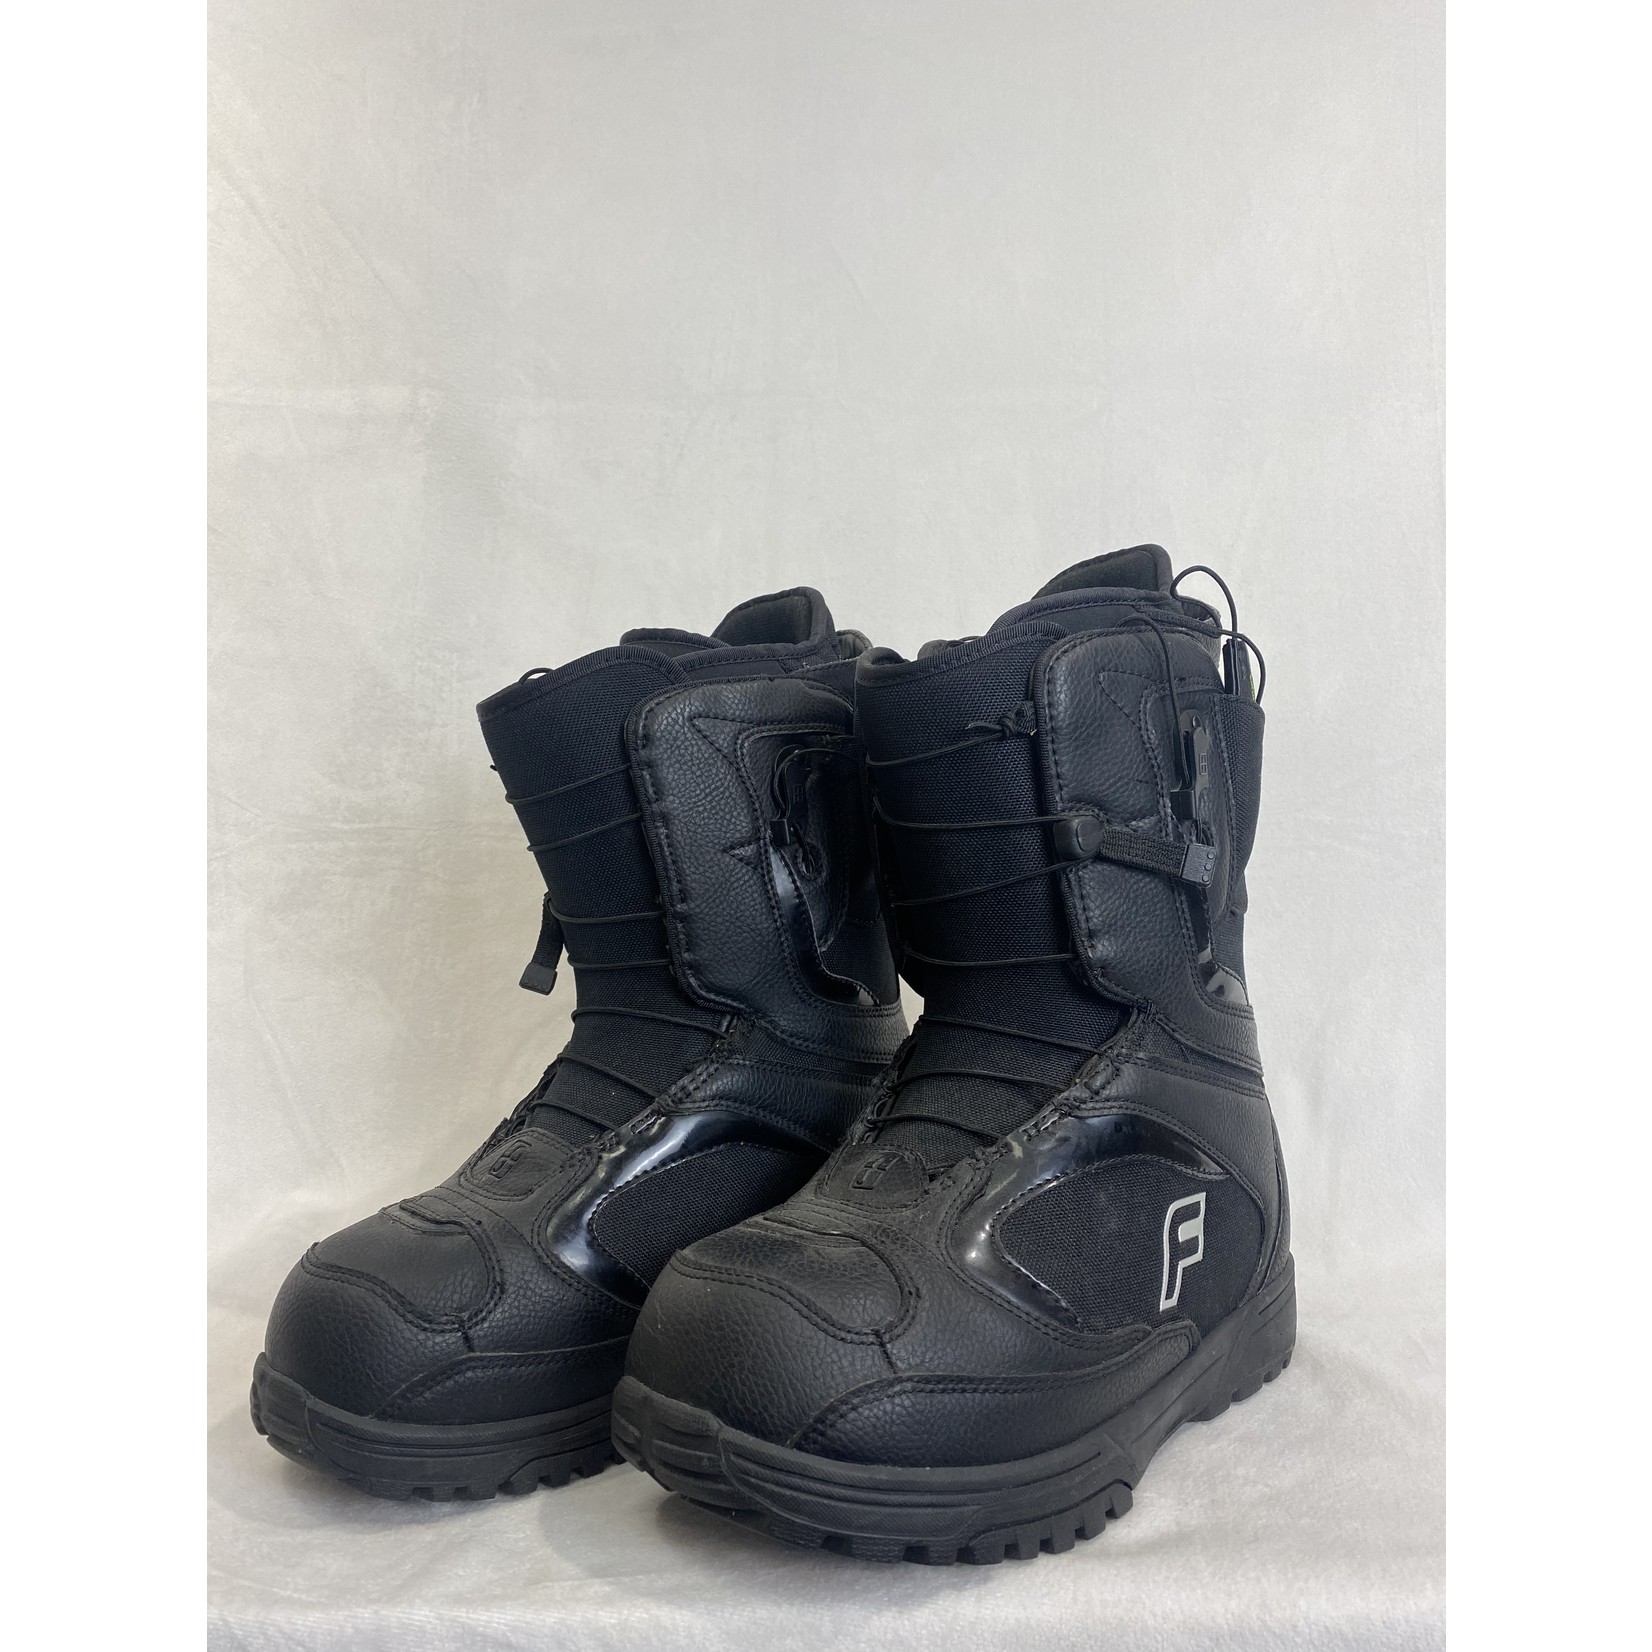 Forum League Snowboard Boots, Size 8.5, WMNS